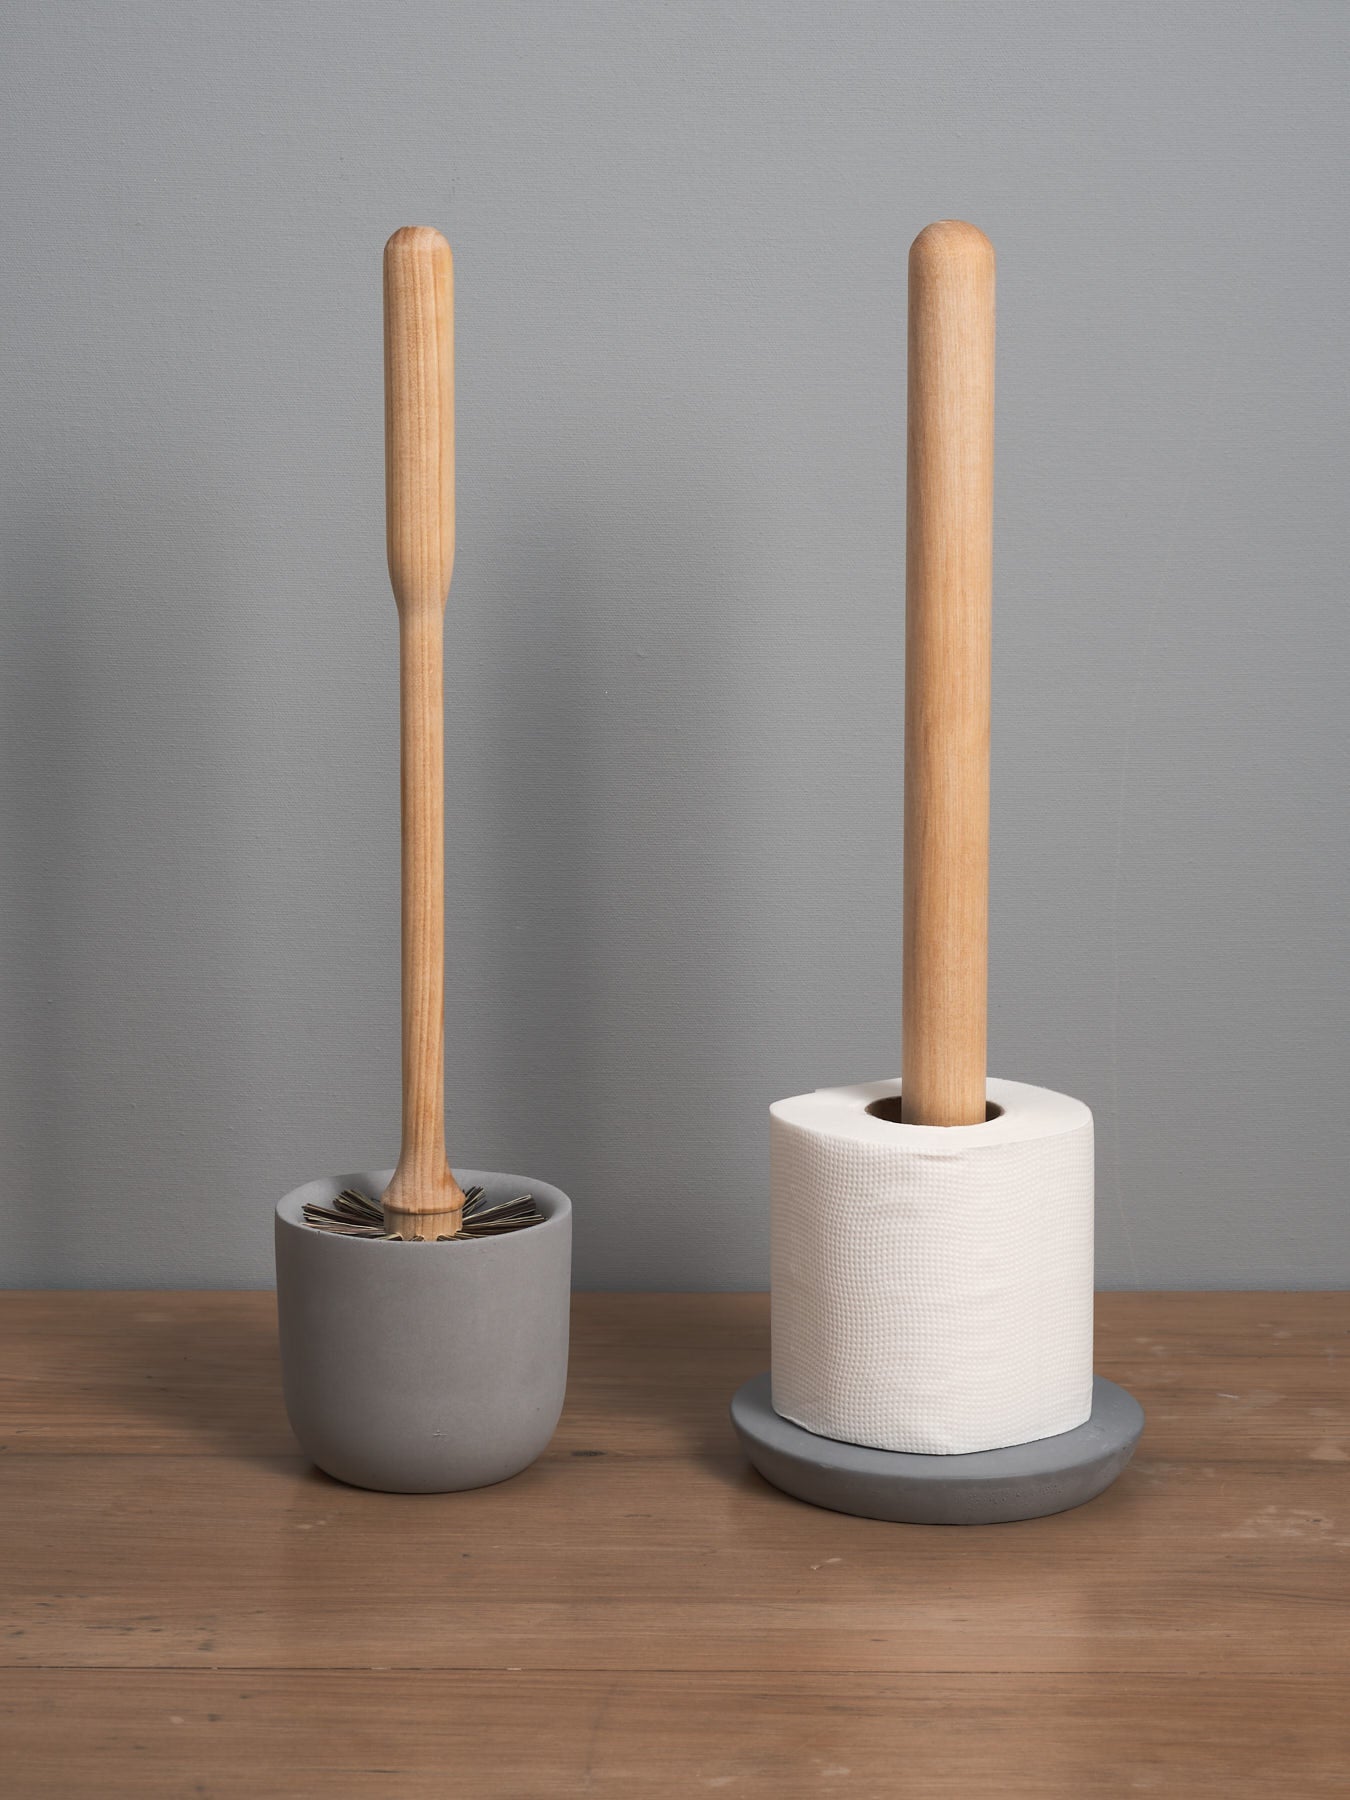 An Iris Hantverk Toilet Brush + Toilet Roll Holder Set on holders against a gray wall.